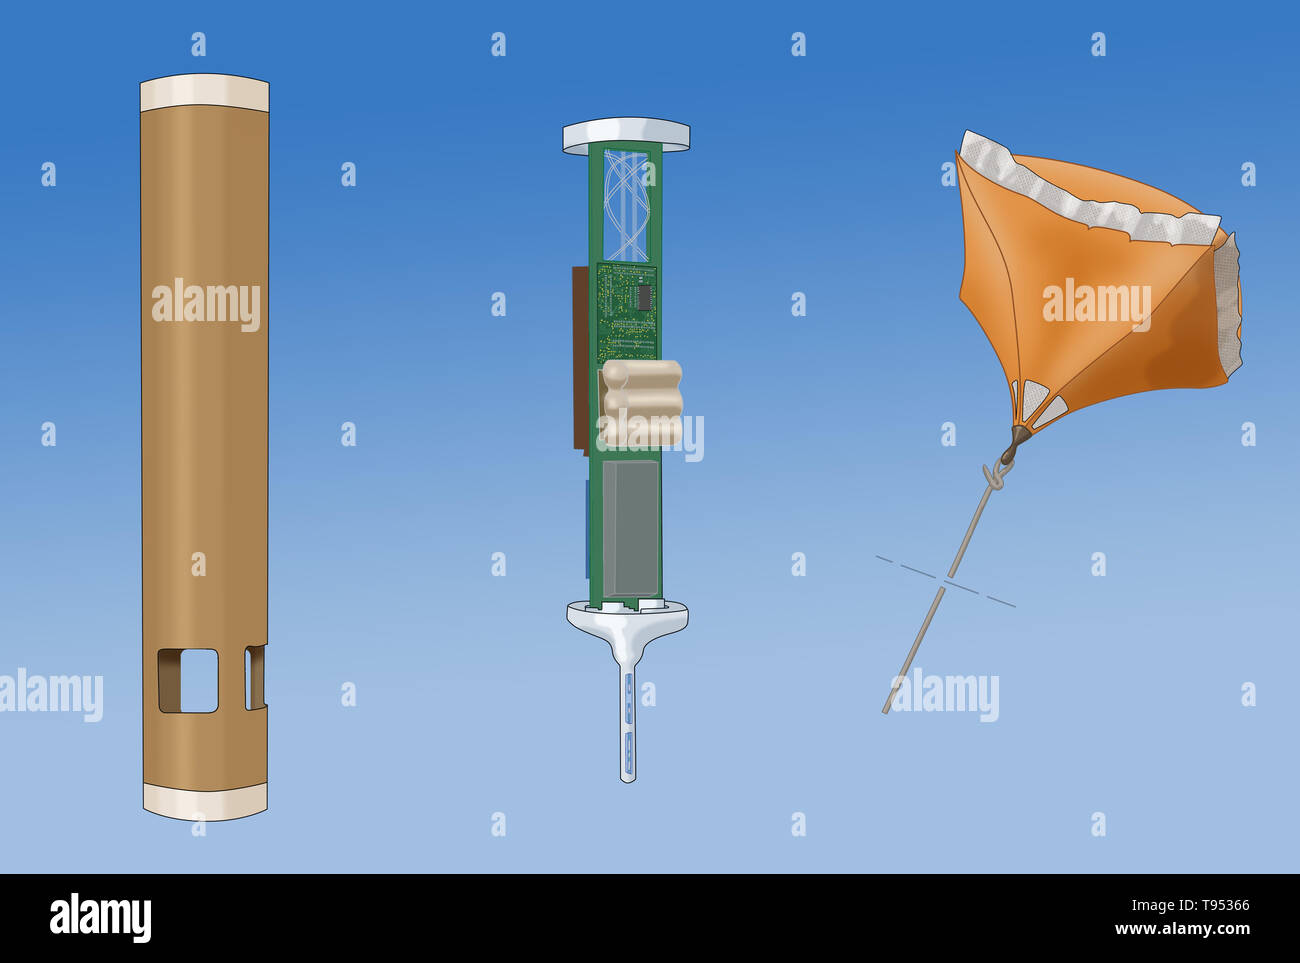 Une dropsonde est un matériel durable reconnaissance météo dispositif créé par le National Center for Atmospheric Research (NCAR), conçu pour être largué d'un avion à l'altitude au-dessus de l'eau à mesurer (et donc la voie) tempête conditions que l'appareil tombe à la surface. Banque D'Images